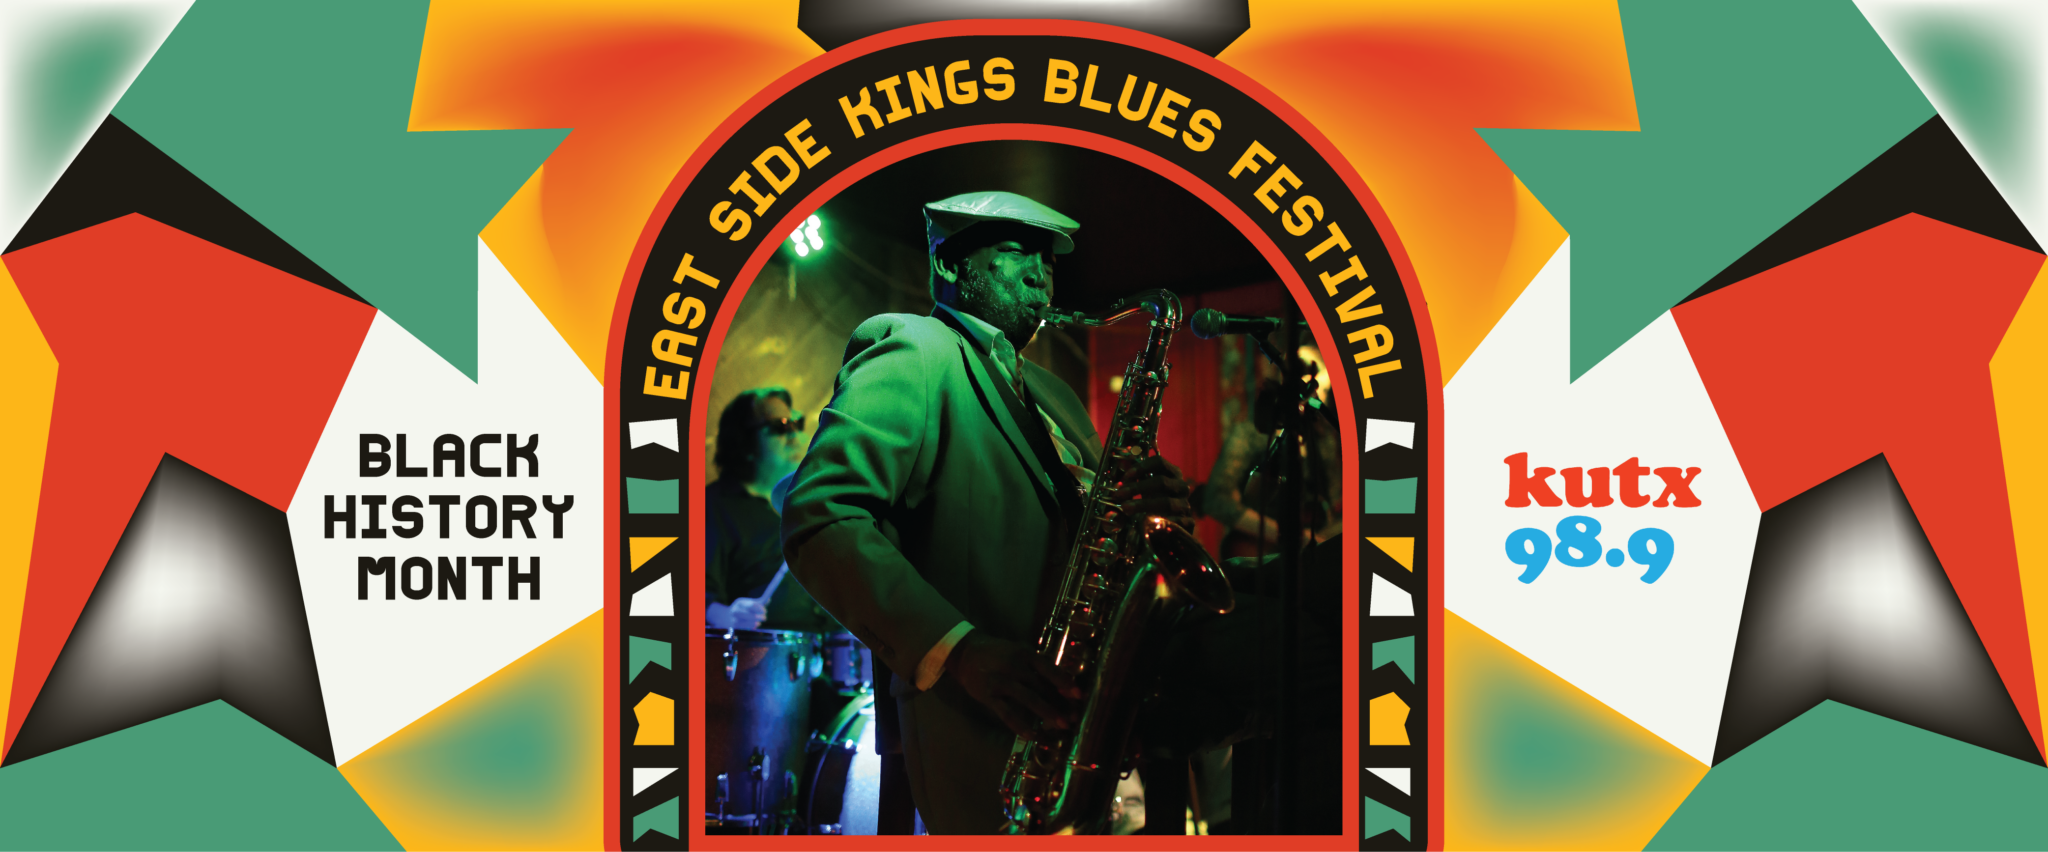 Black History Month Profile The Eastside Kings Blues Festival KUTX